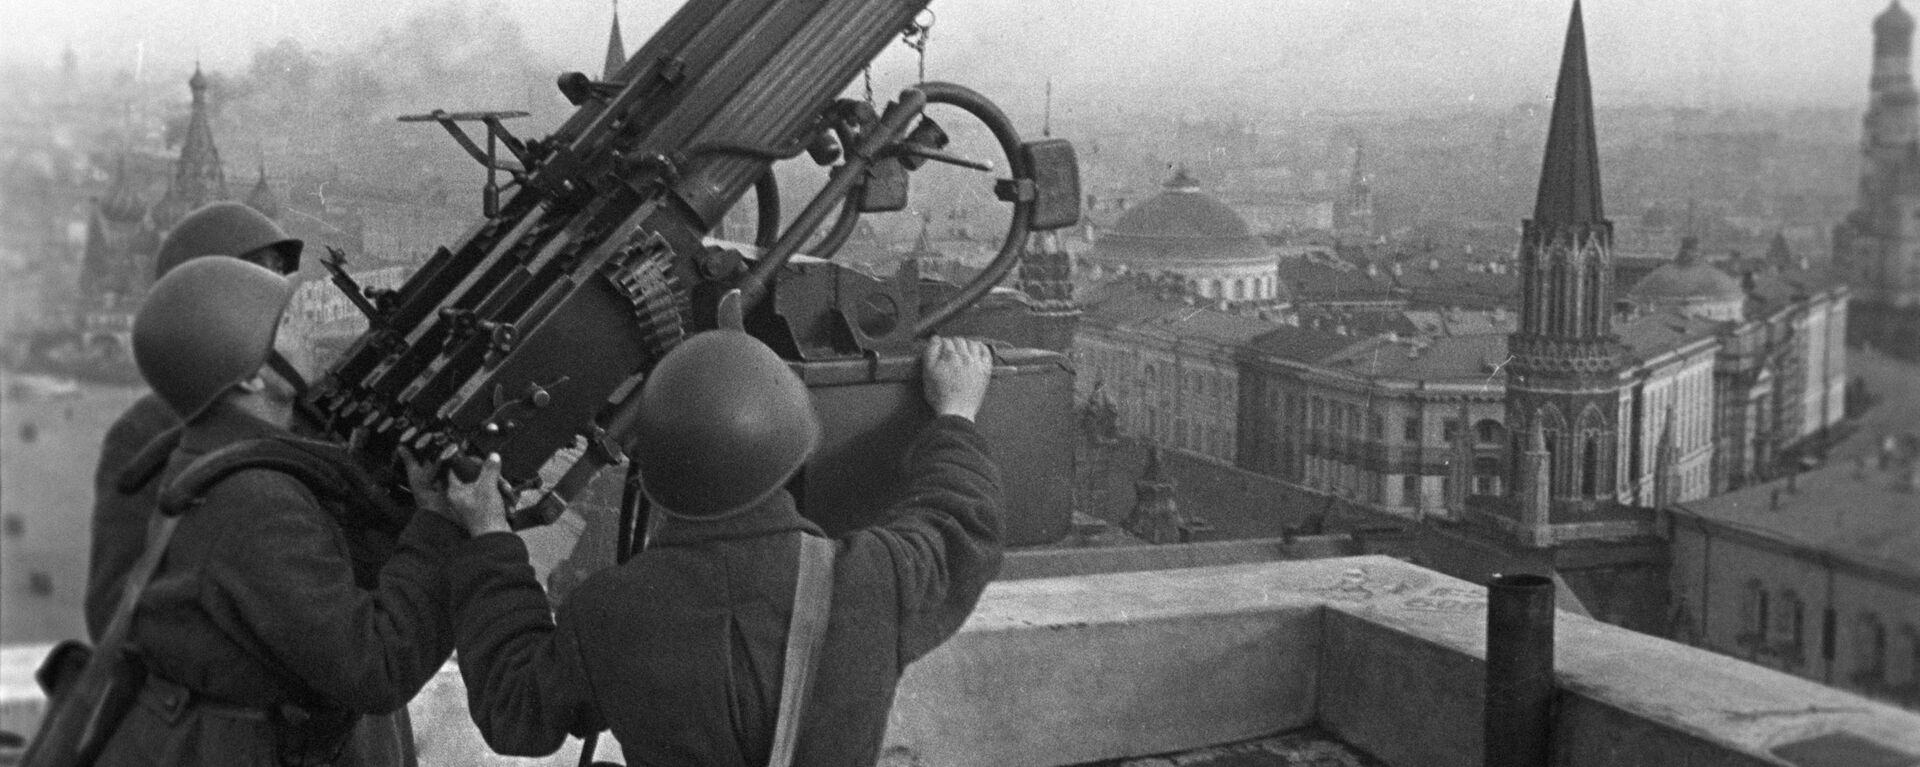 Советские зенитчики на крыше гостиницы Москва, 1941 год - Sputnik Латвия, 1920, 30.09.2021